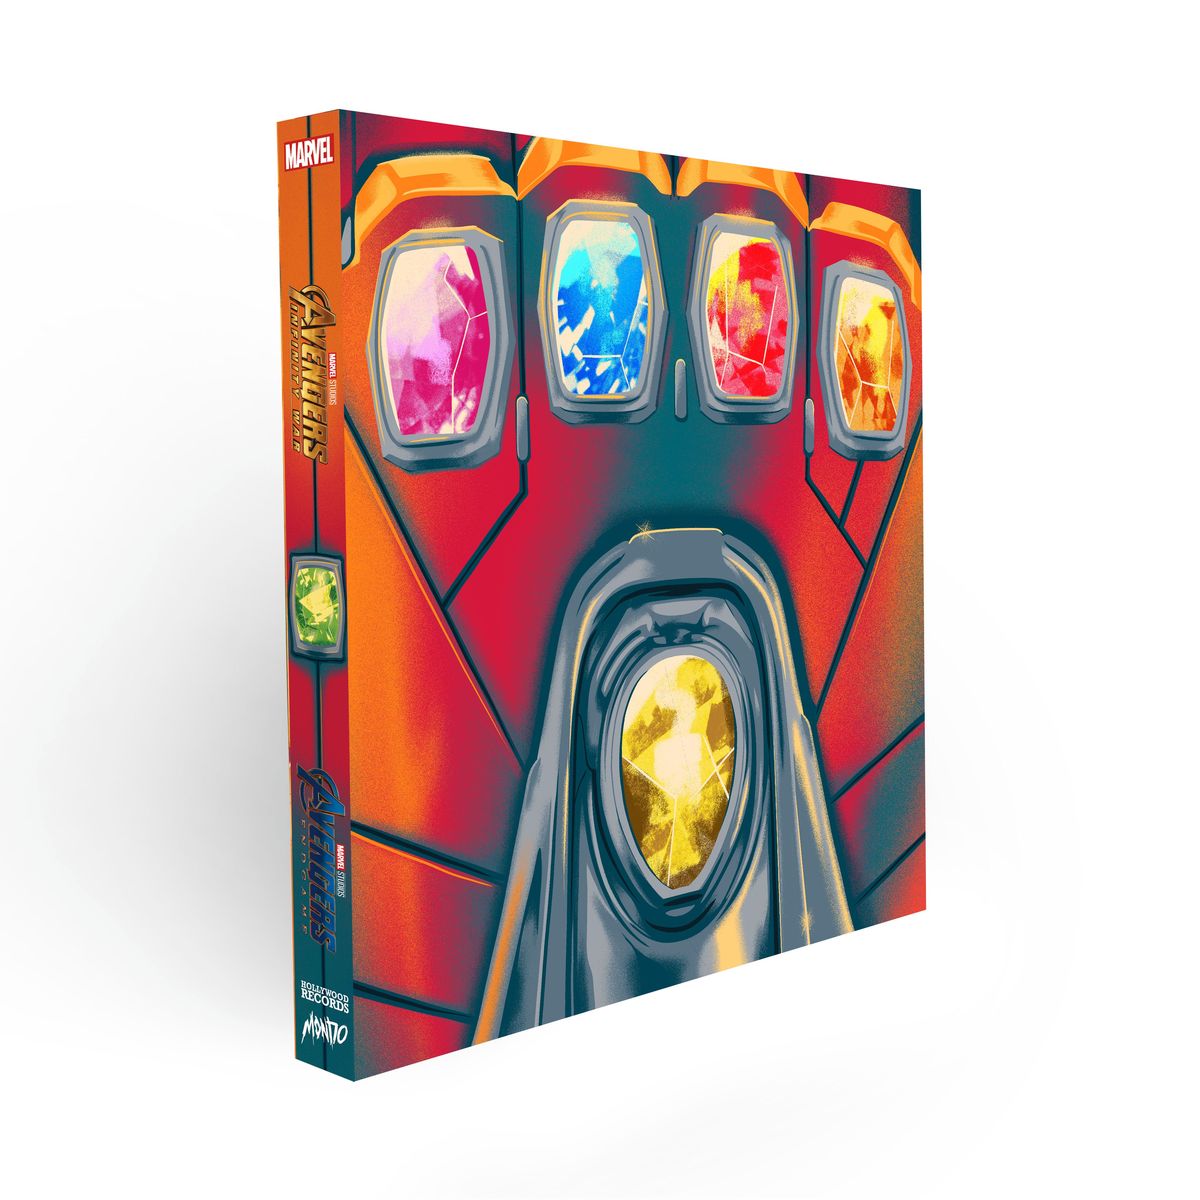 Avengers: Infinity War och Endgame Vinyl Soundtracks Få Mondo Box Sets